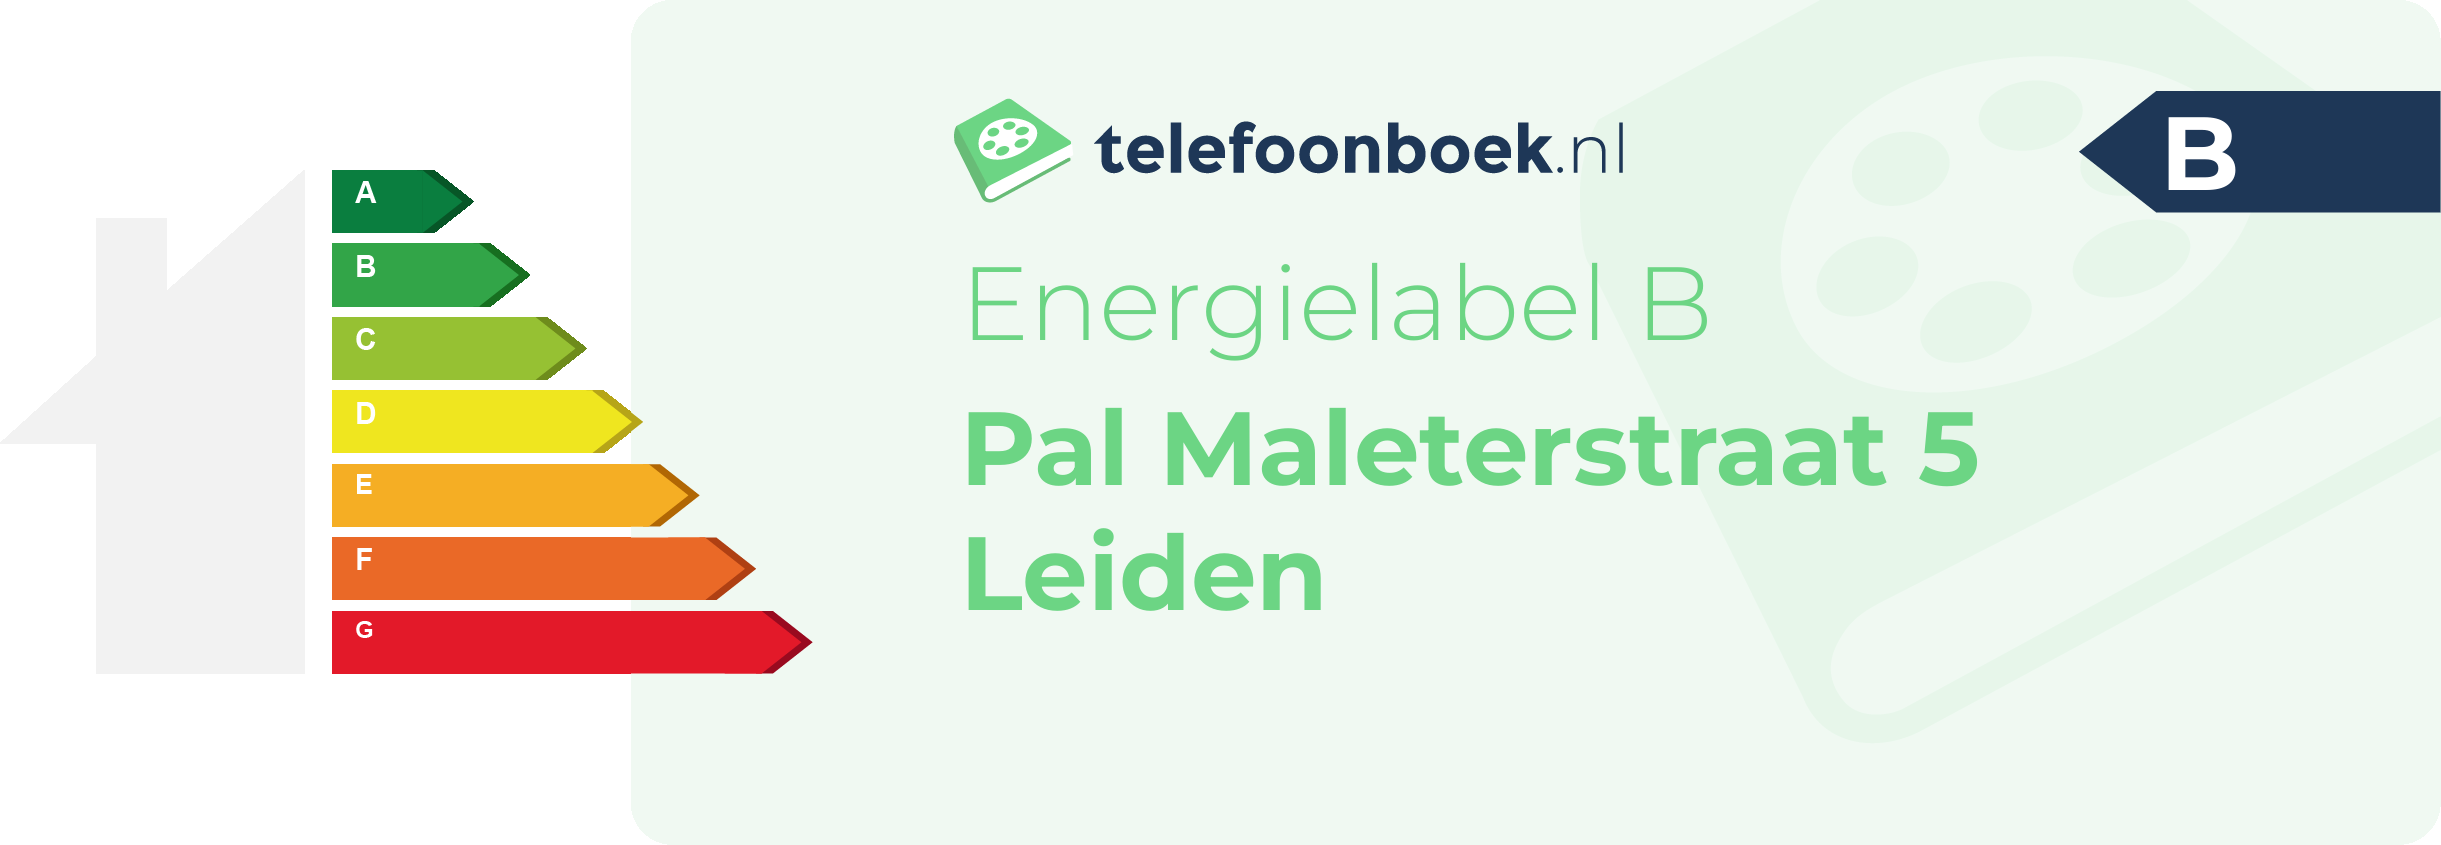 Energielabel Pal Maleterstraat 5 Leiden